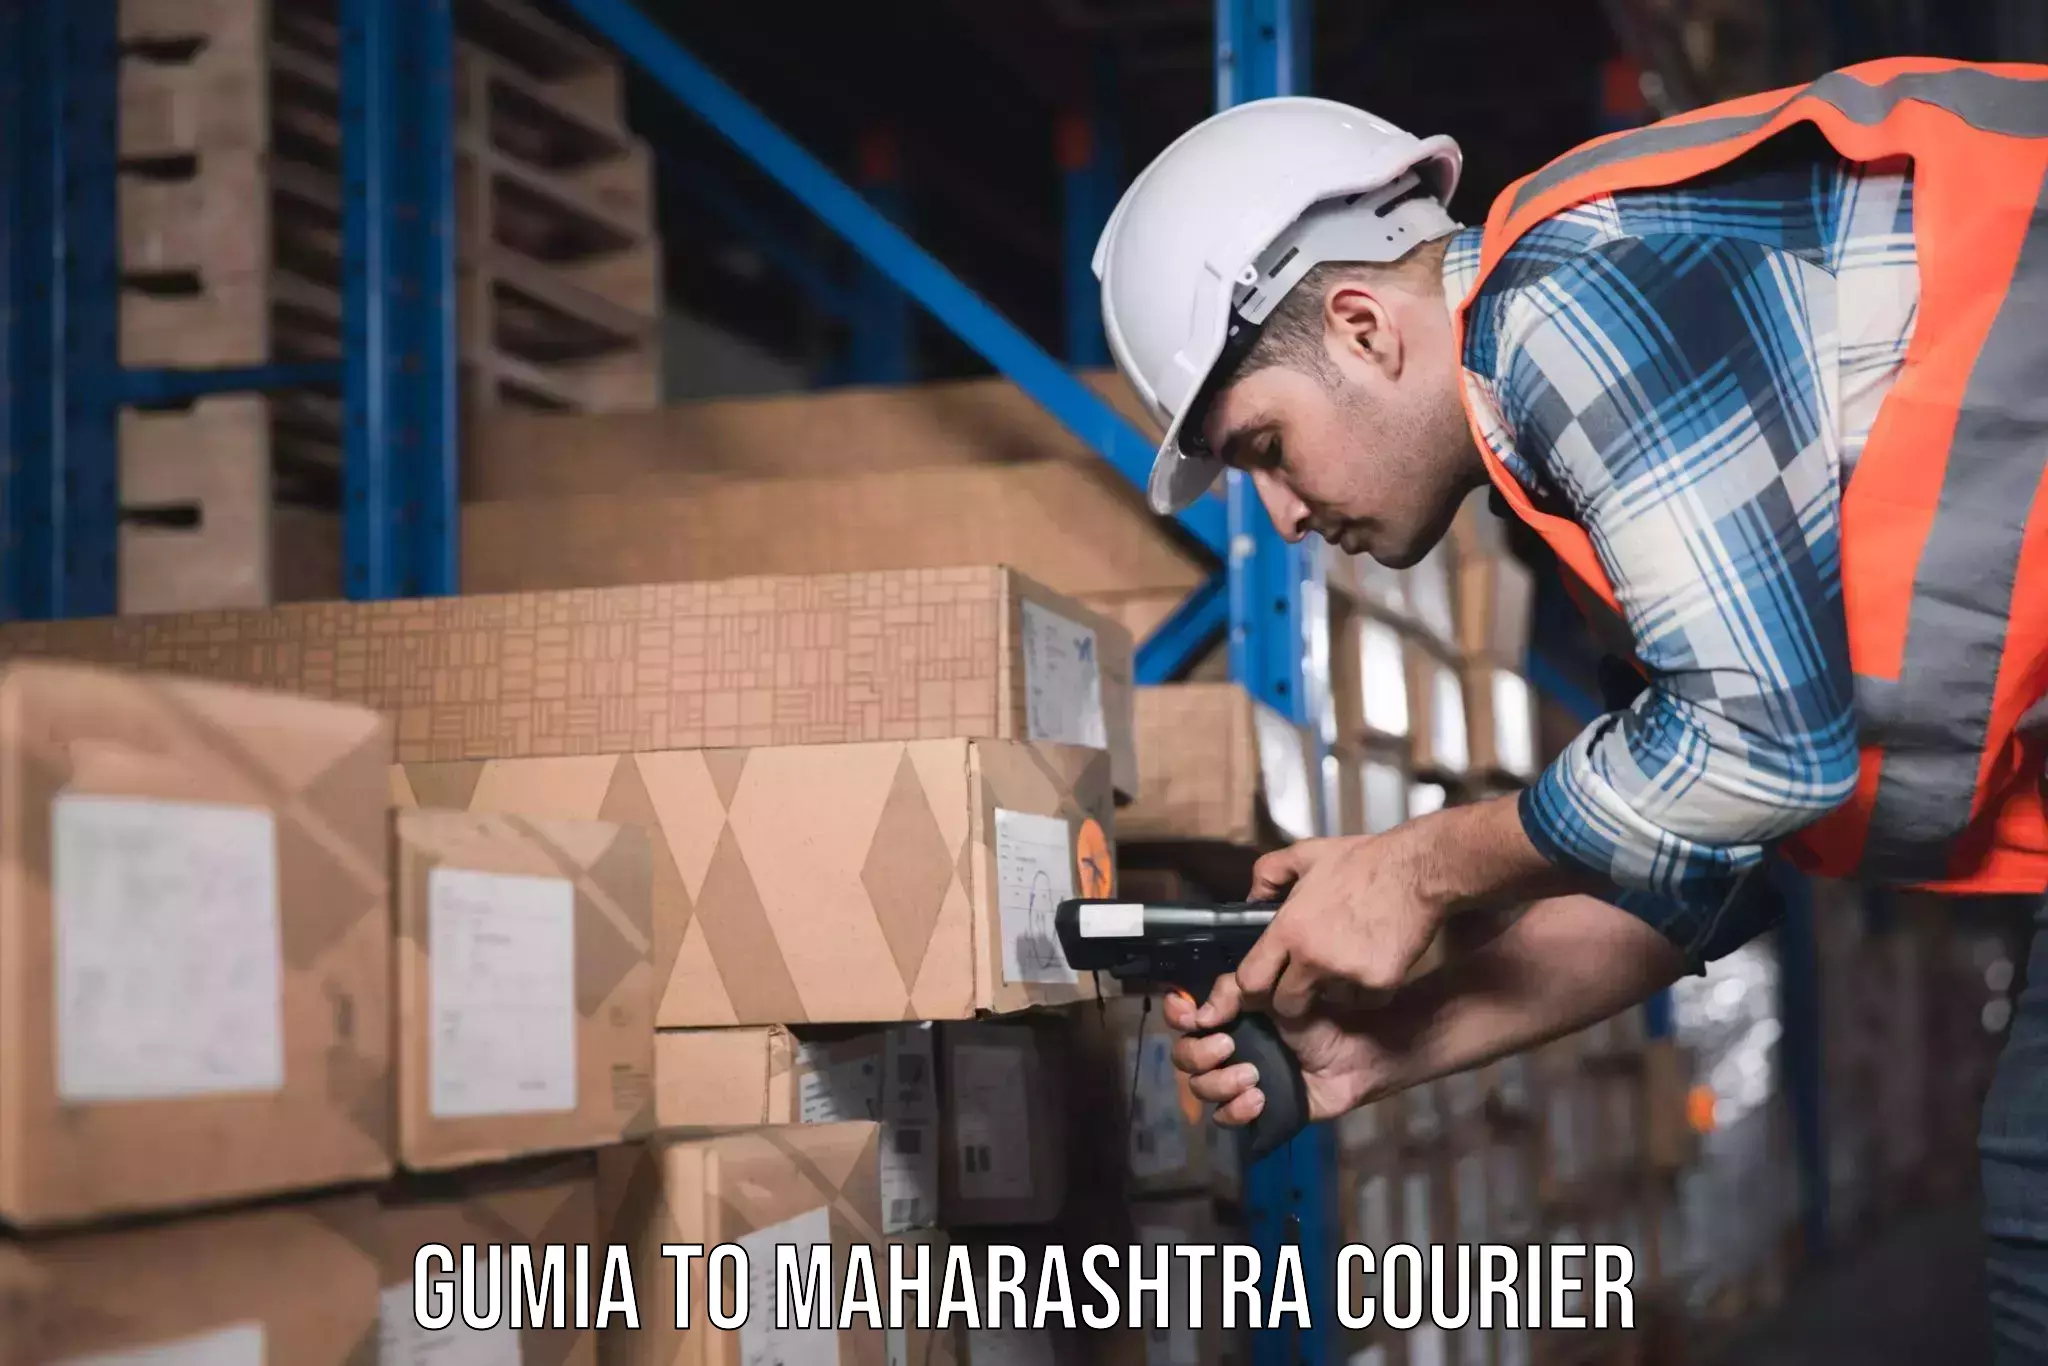 Furniture moving assistance Gumia to Maharashtra